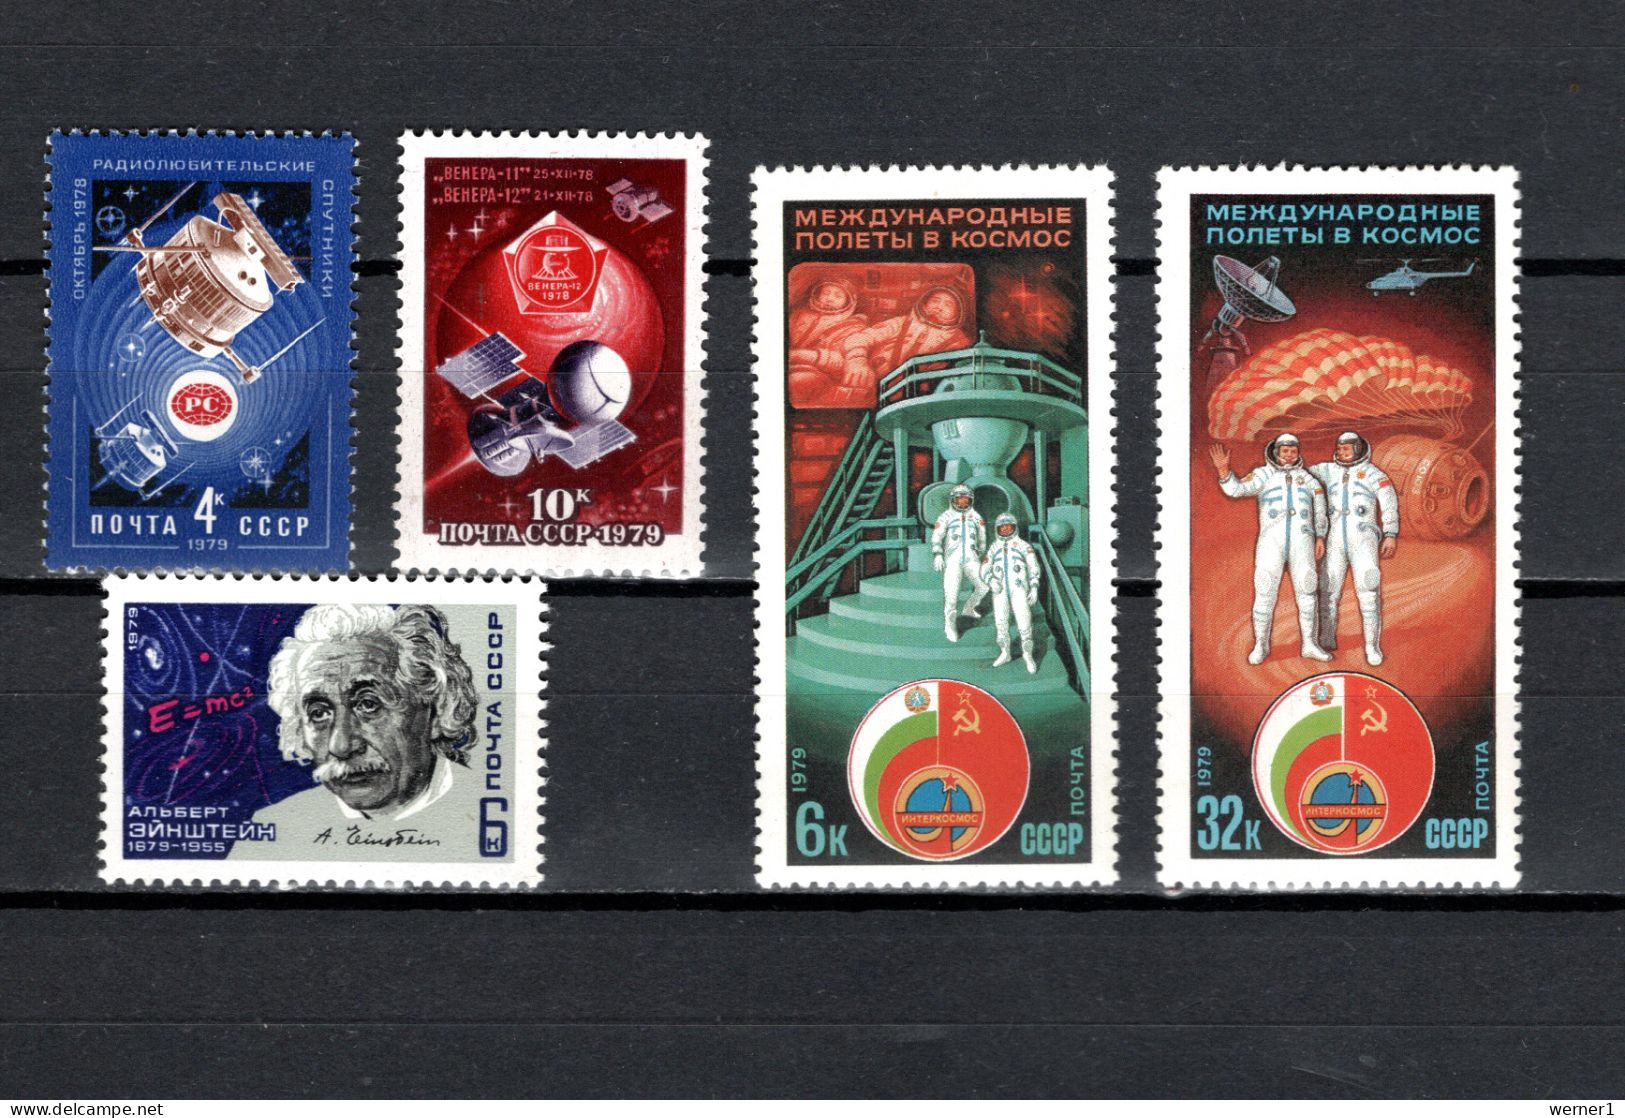 USSR Russia 1979 Space, News Satellites, Venus, Albert Einstein, Interkosmos 5 Stamps MNH - Rusia & URSS